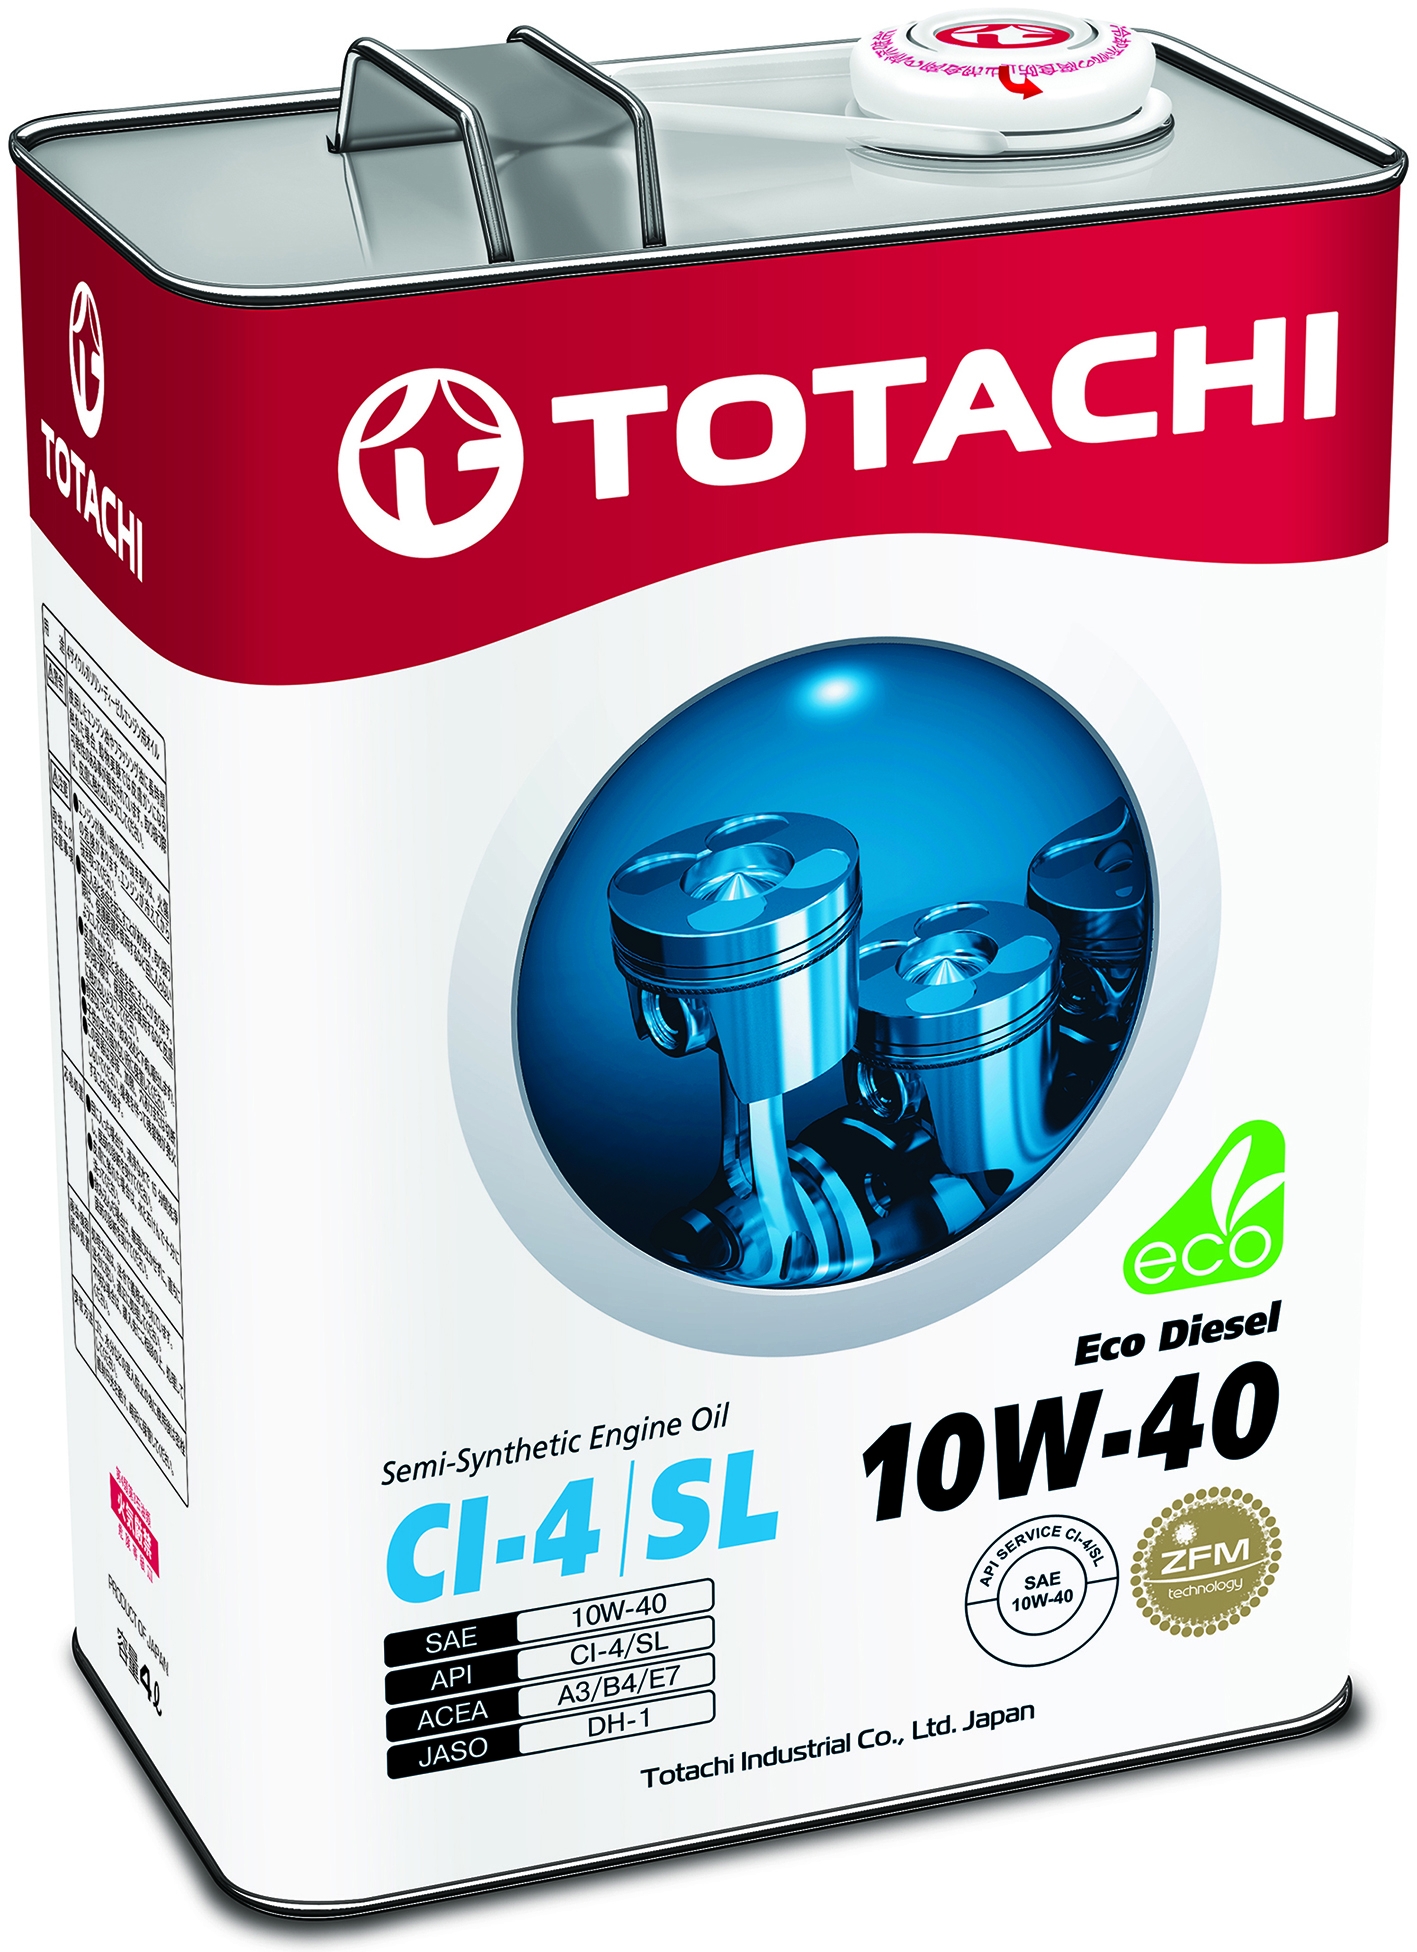 TOTACHI Eco DIESEL, 10W-40, CI-4/SL, полусинтетика,1л, Япония